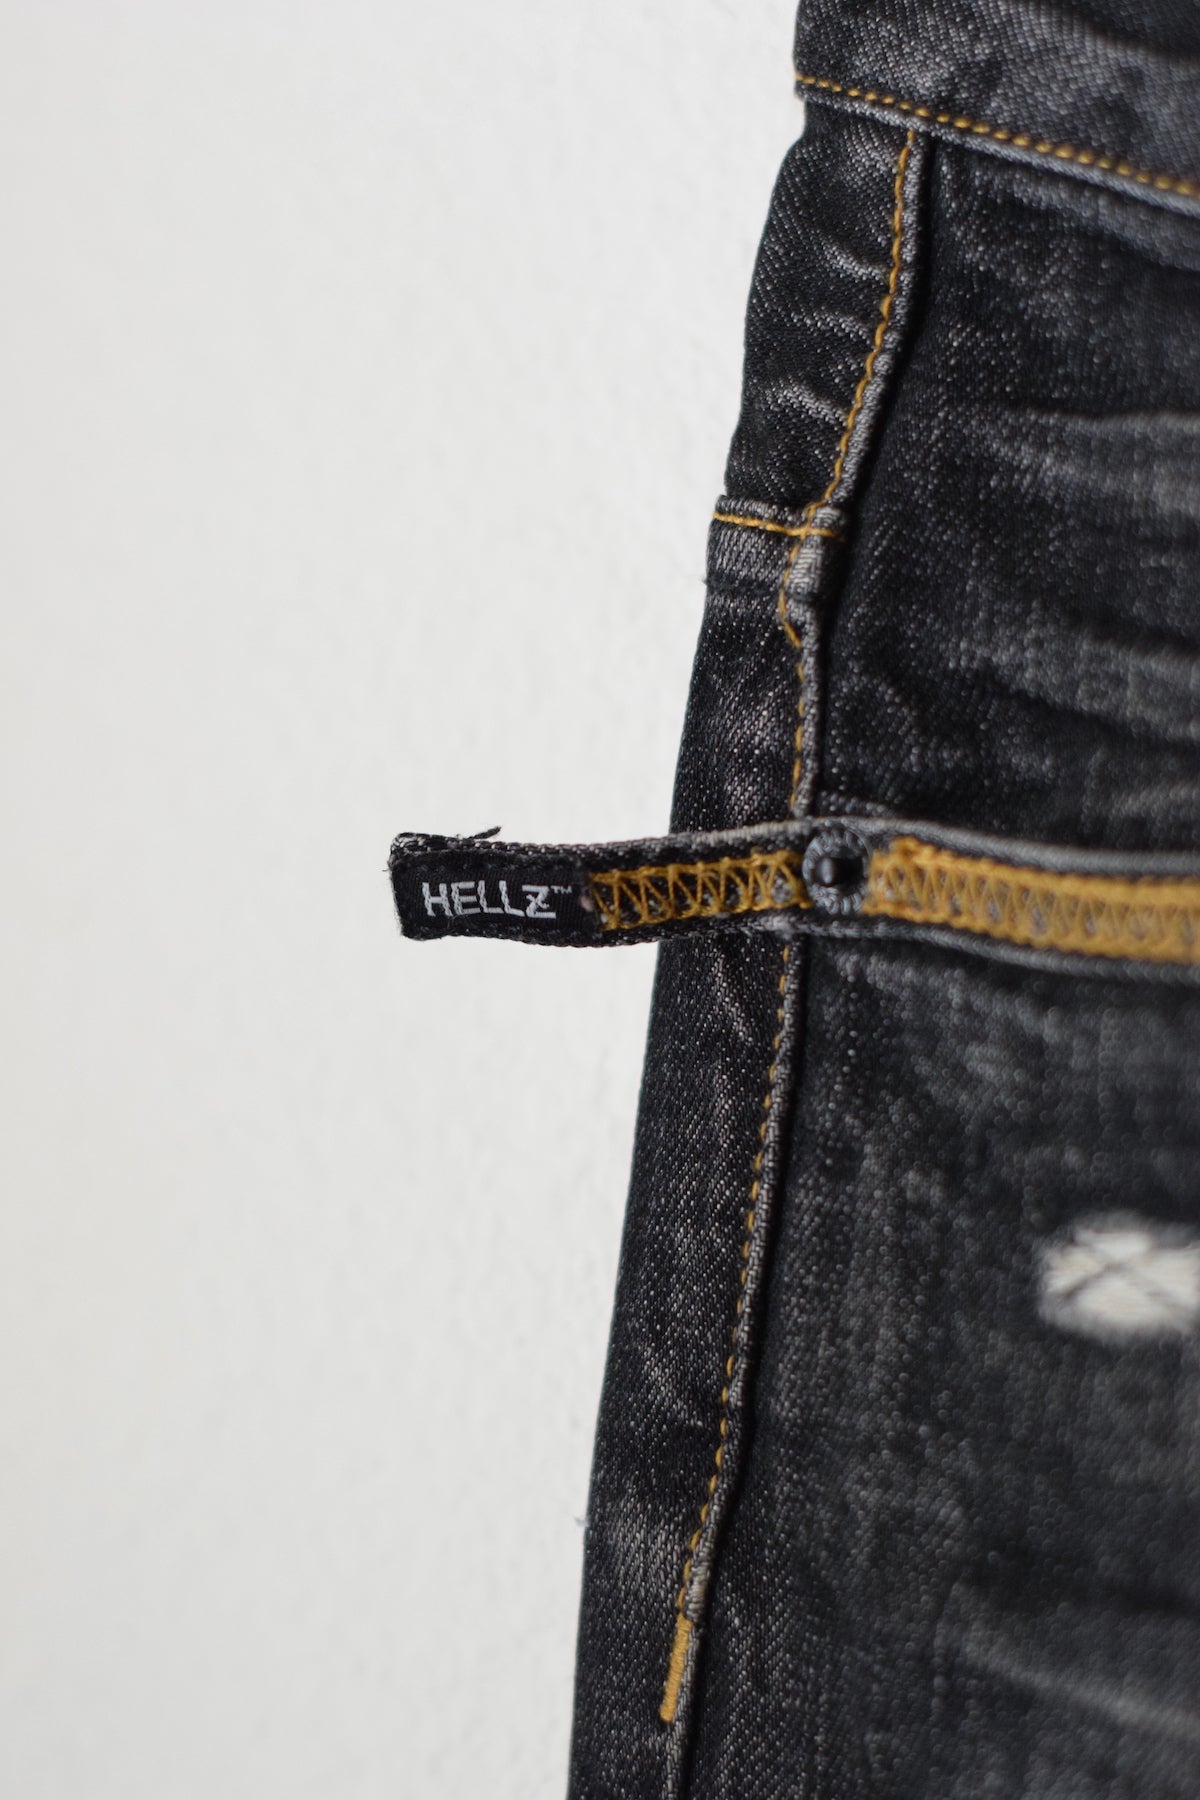 HELLZ BELLZ low rise jeans